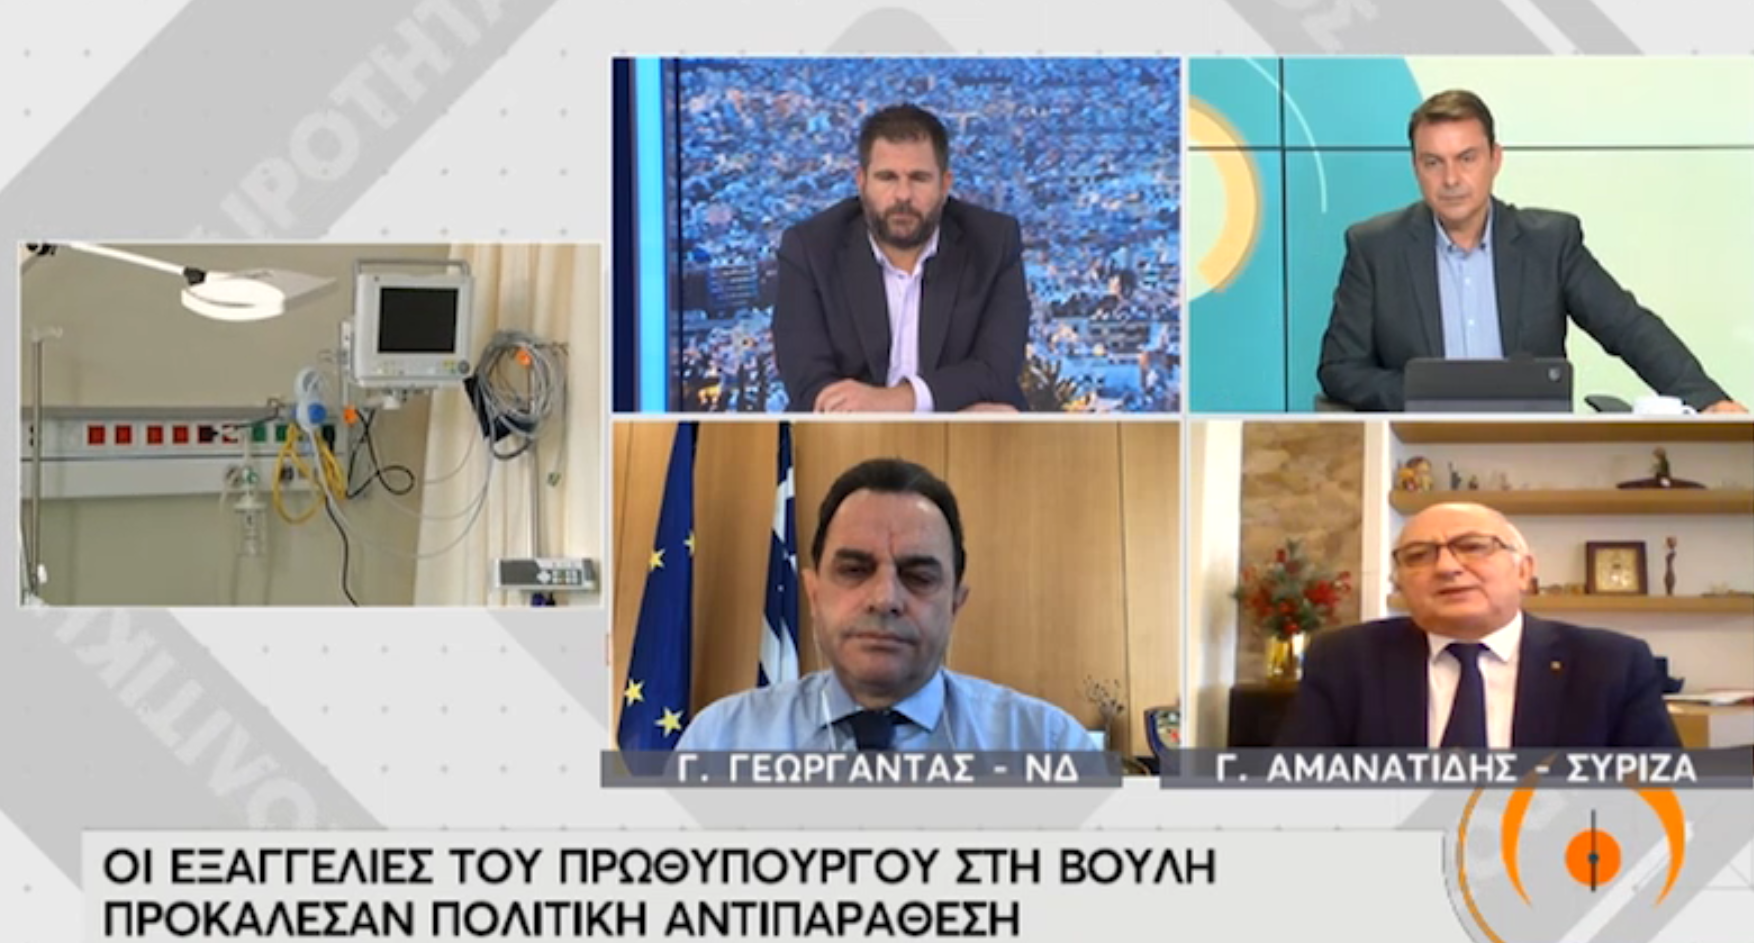 Γιάννης Αμανατίδης: Να επιδείξει υπευθυνότητα και σοβαρότητα η κυβέρνηση - βίντεο